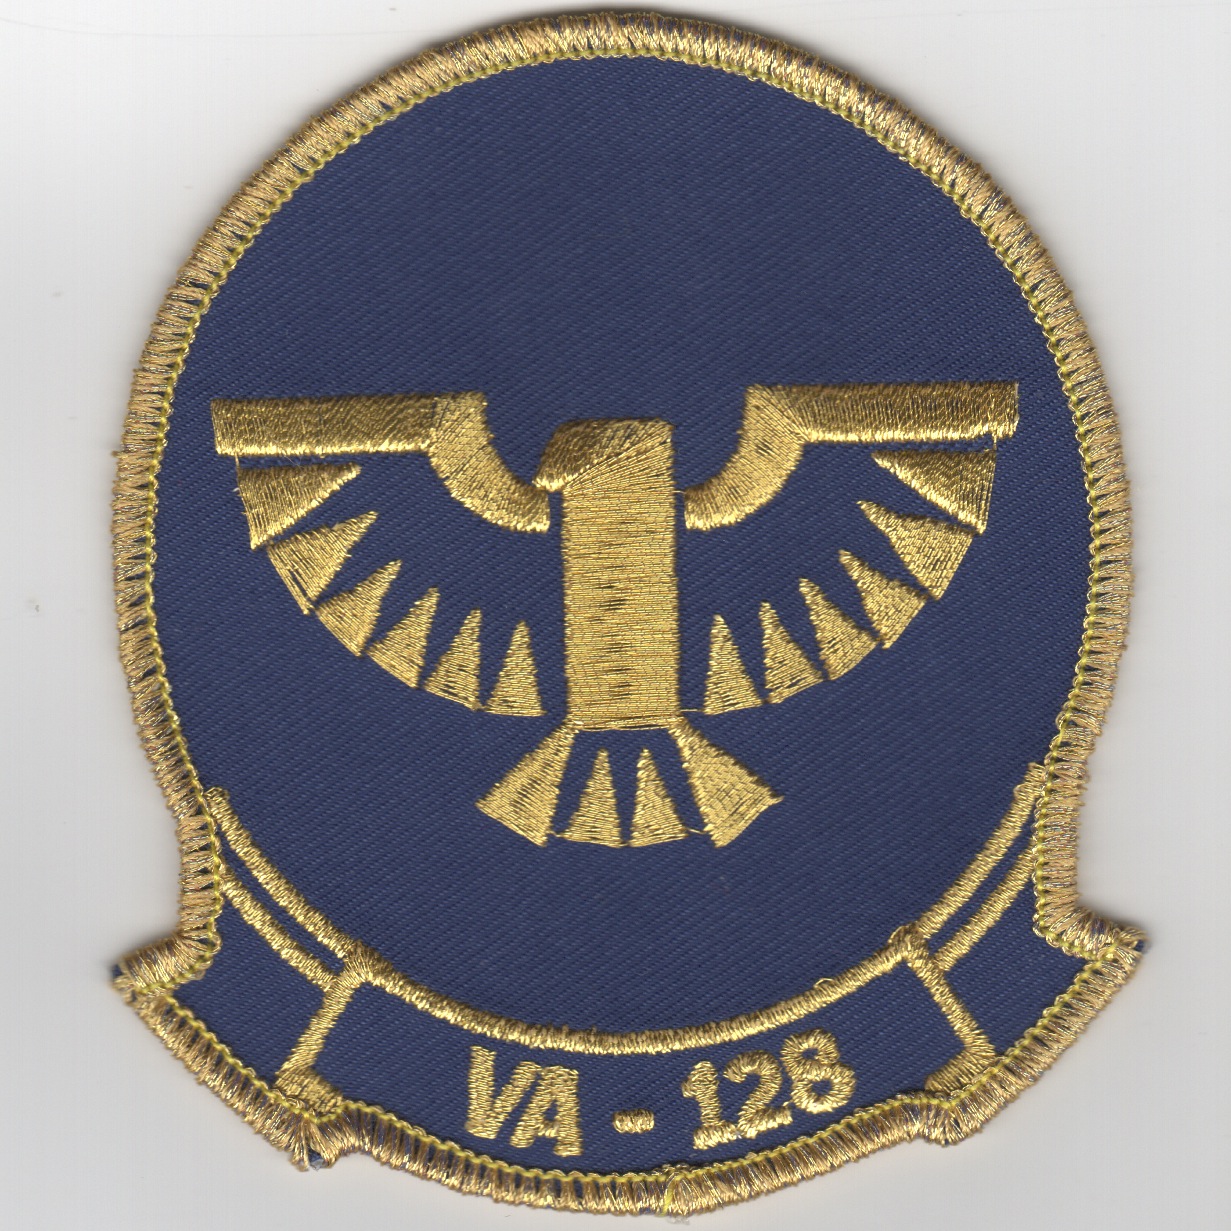 VA-128 Squadron Patch (Blue/Gold)